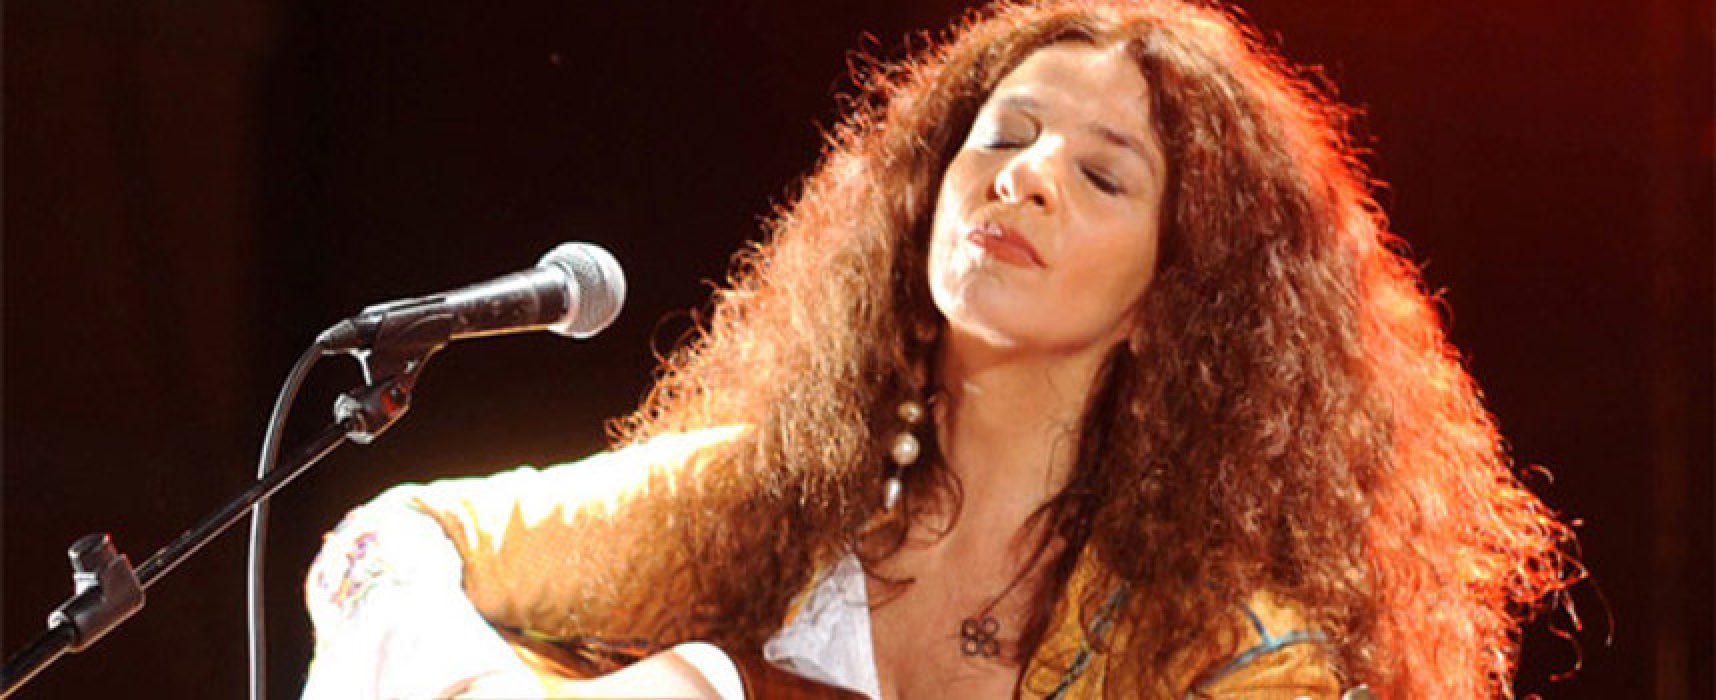 Teresa De Sio canta Pino Daniele a Bisceglie, evento gratuito